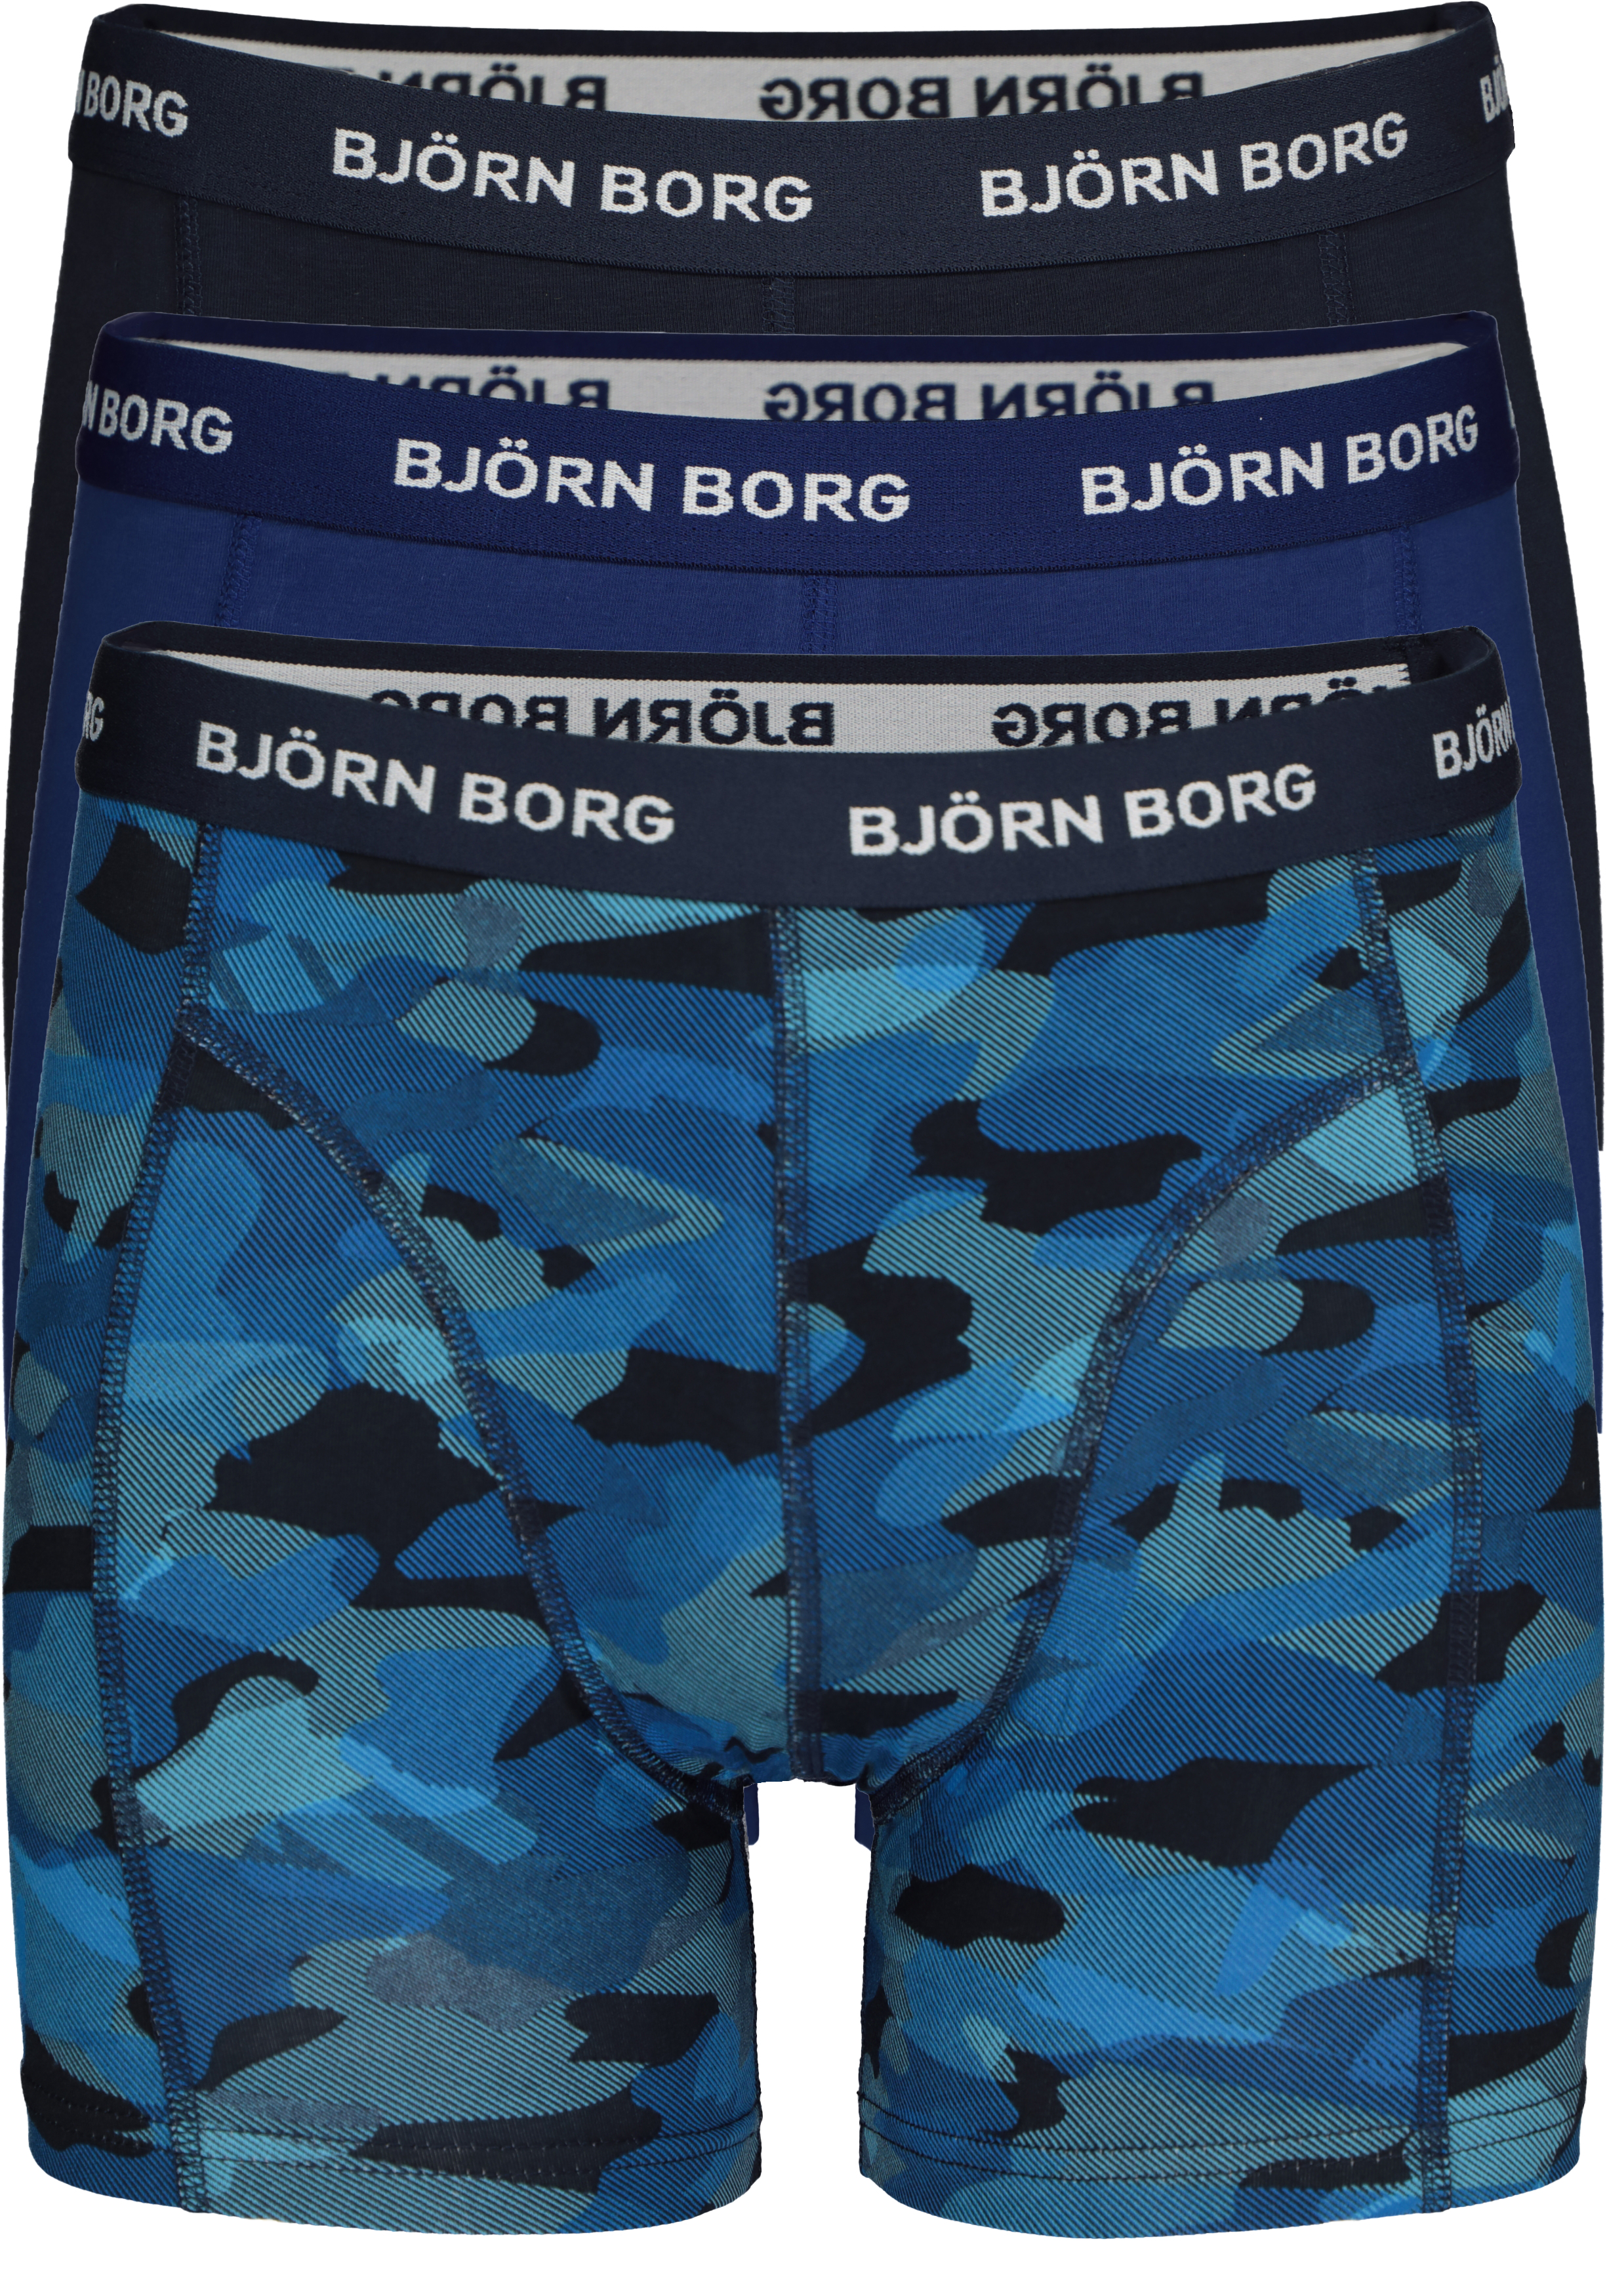 leef ermee elkaar stof in de ogen gooien Bjorn Borg boxershorts Essential (3-pack), heren boxers normale lengte,...  - Gratis verzending en retour